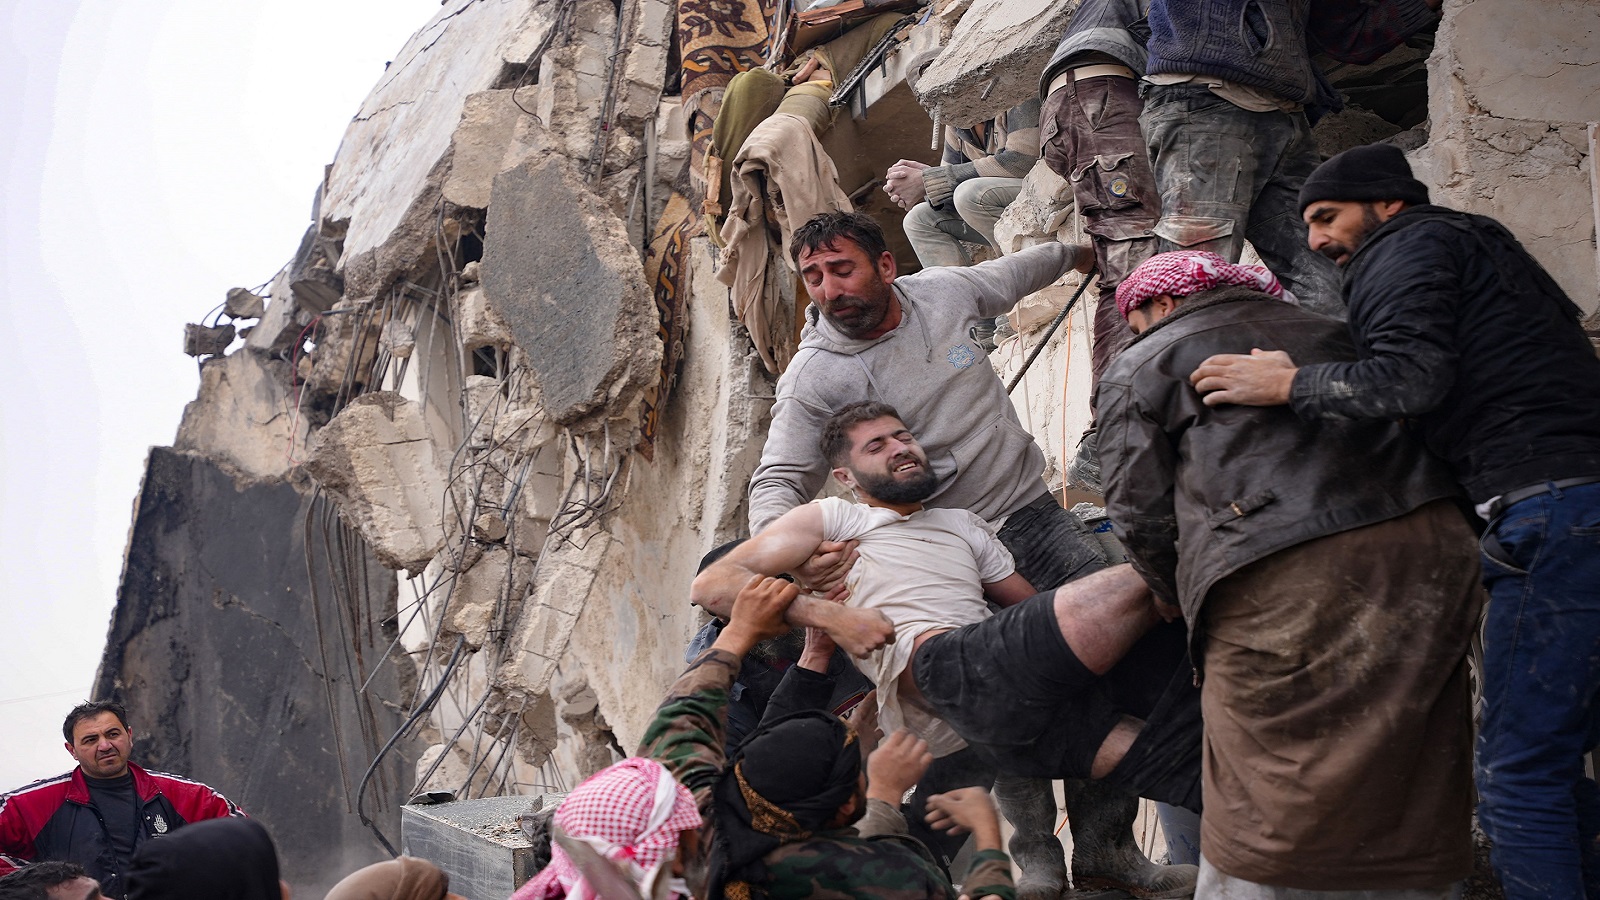 الأسد يستثمر المأساة: الزلزال فرصة لكسر العقوبات وفك العزلة